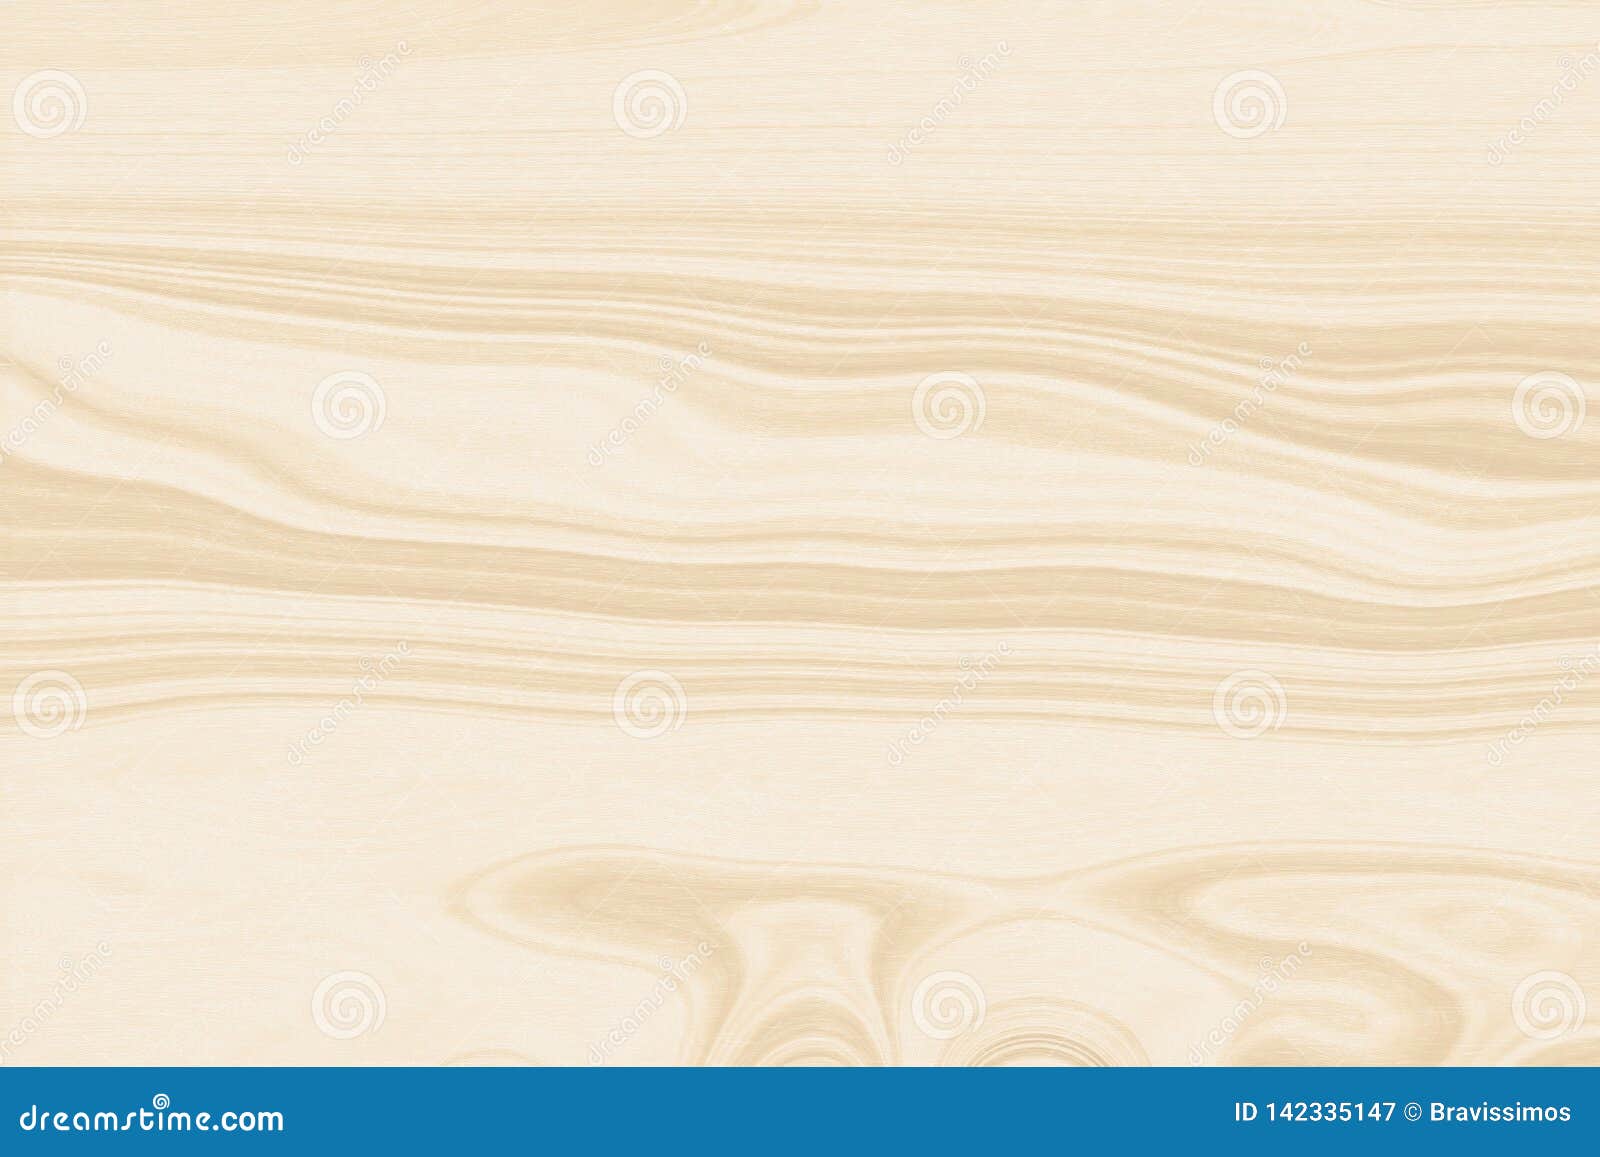 Nền gỗ trắng ánh sáng - Với nền gỗ trắng ánh sáng, không gian sẽ trở nên sang trọng, hiện đại và có phần ấm áp dịu dàng. Hãy cùng khám phá hình ảnh những nền gỗ trắng này.